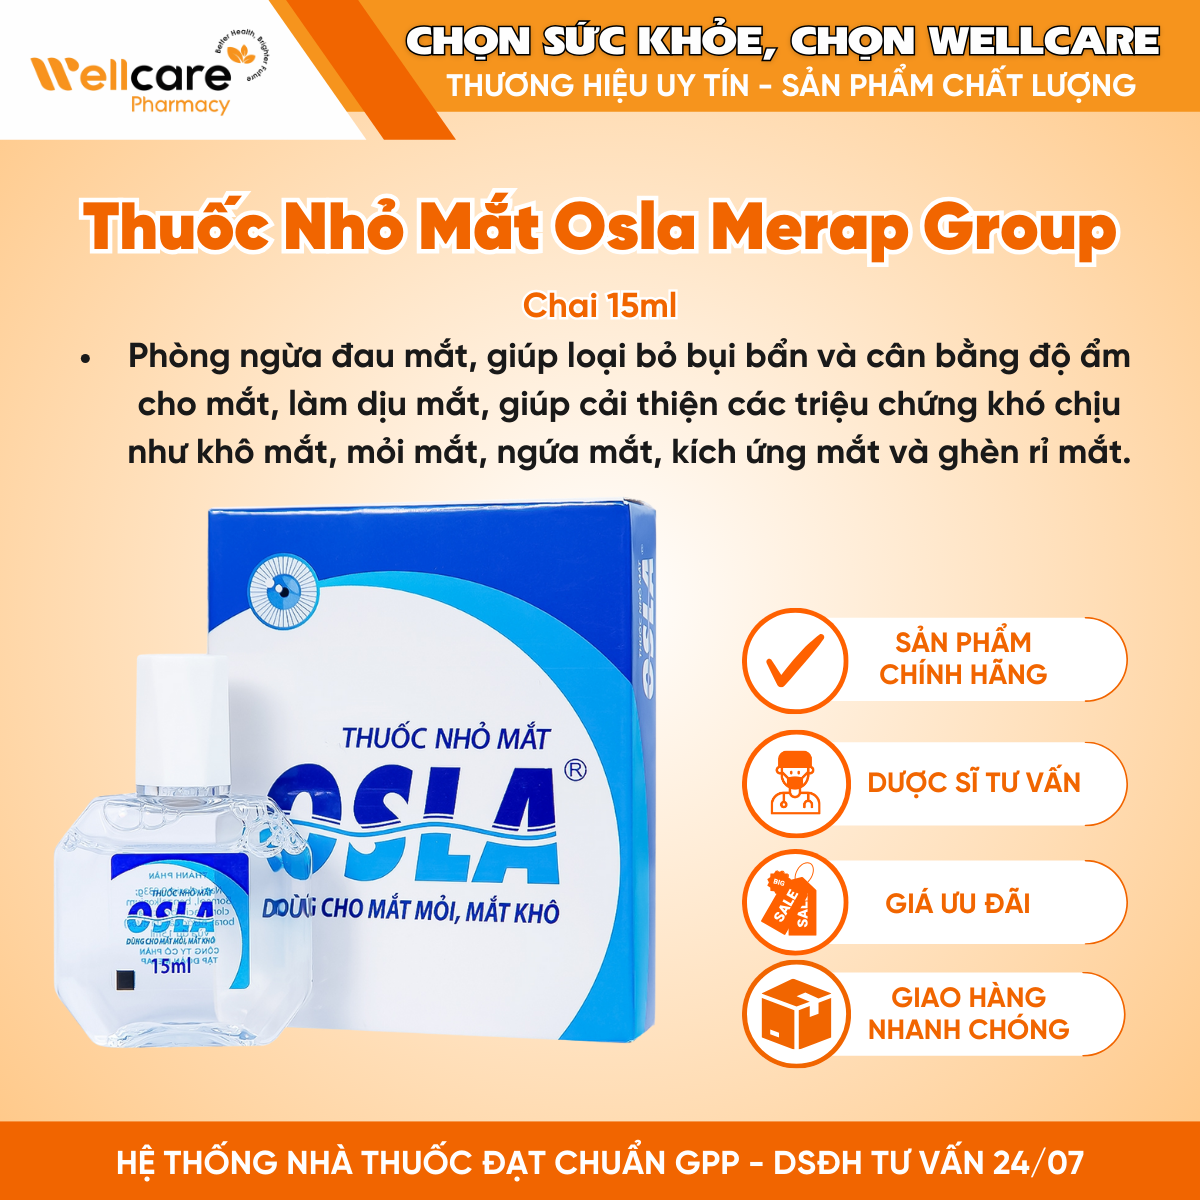 Thuốc nhỏ mắt Osla Merap Group – Dùng cho mắt mỏi, mắt khô (15ml)